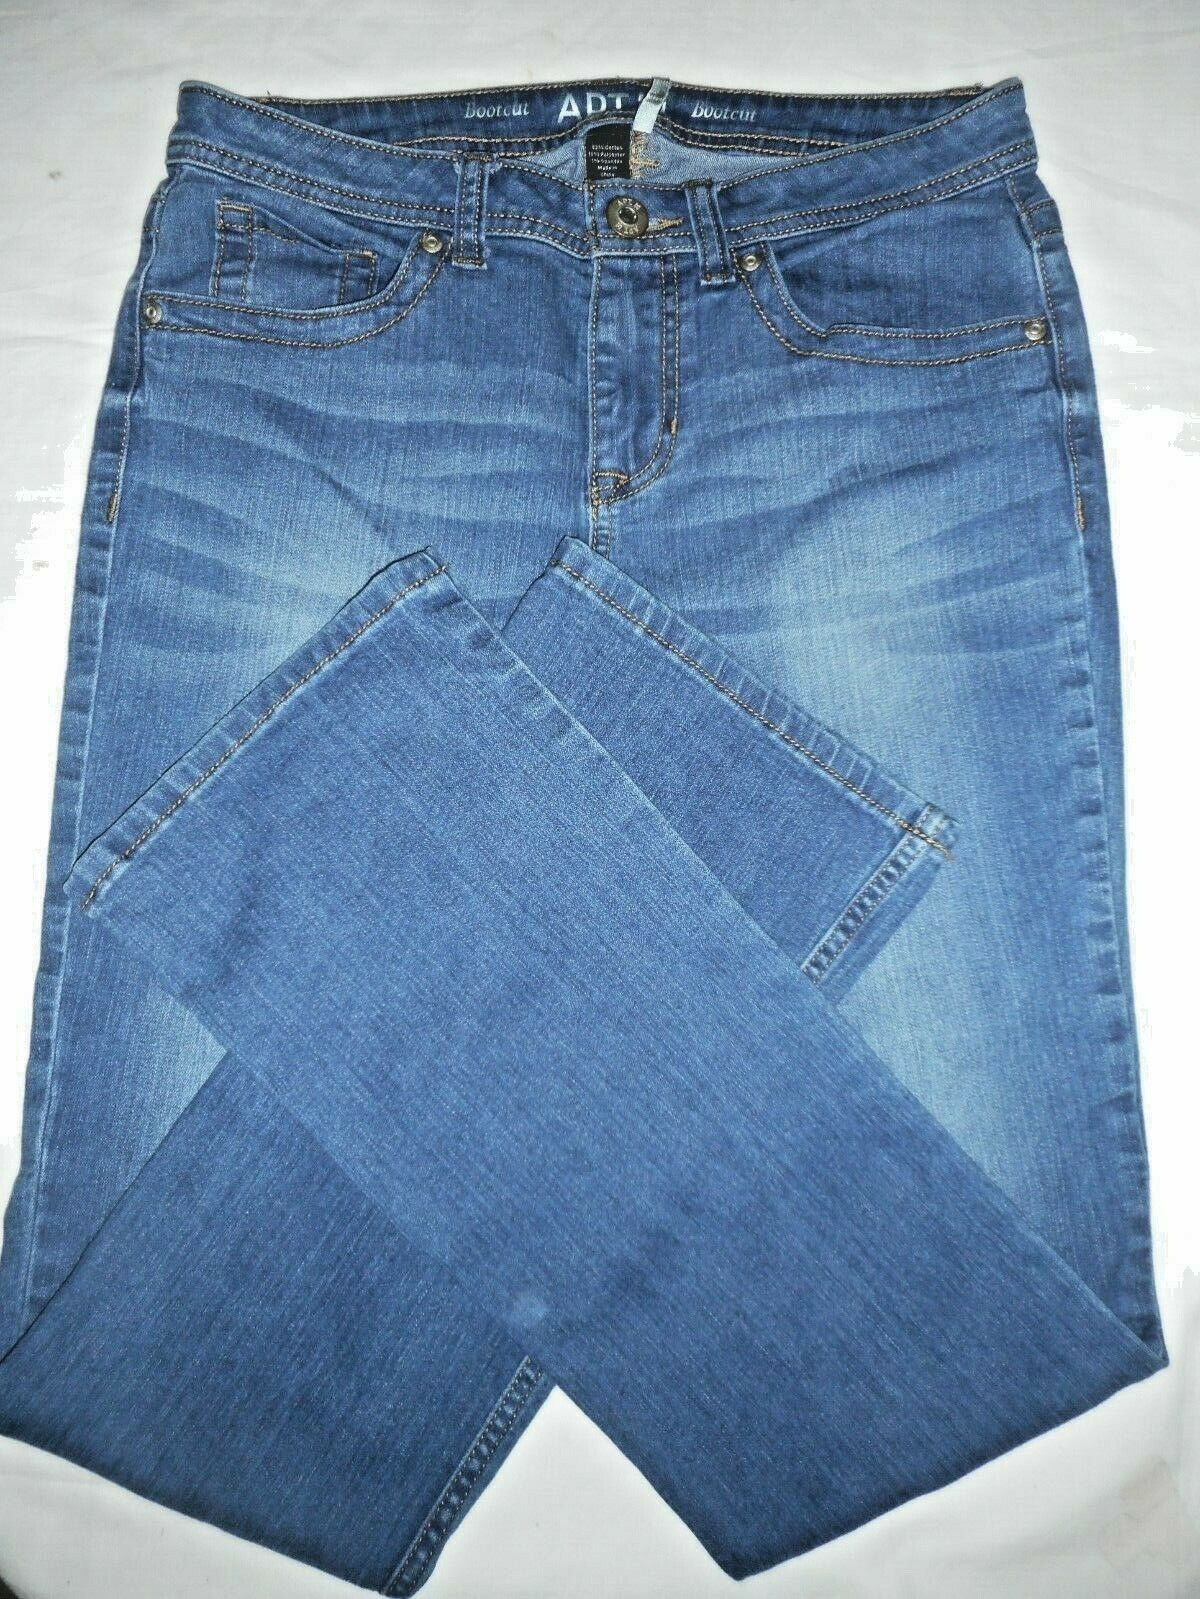 Apt 9 Capri Jeans Size 10 Embellished  Capri jeans, Clothes design, Jeans  size